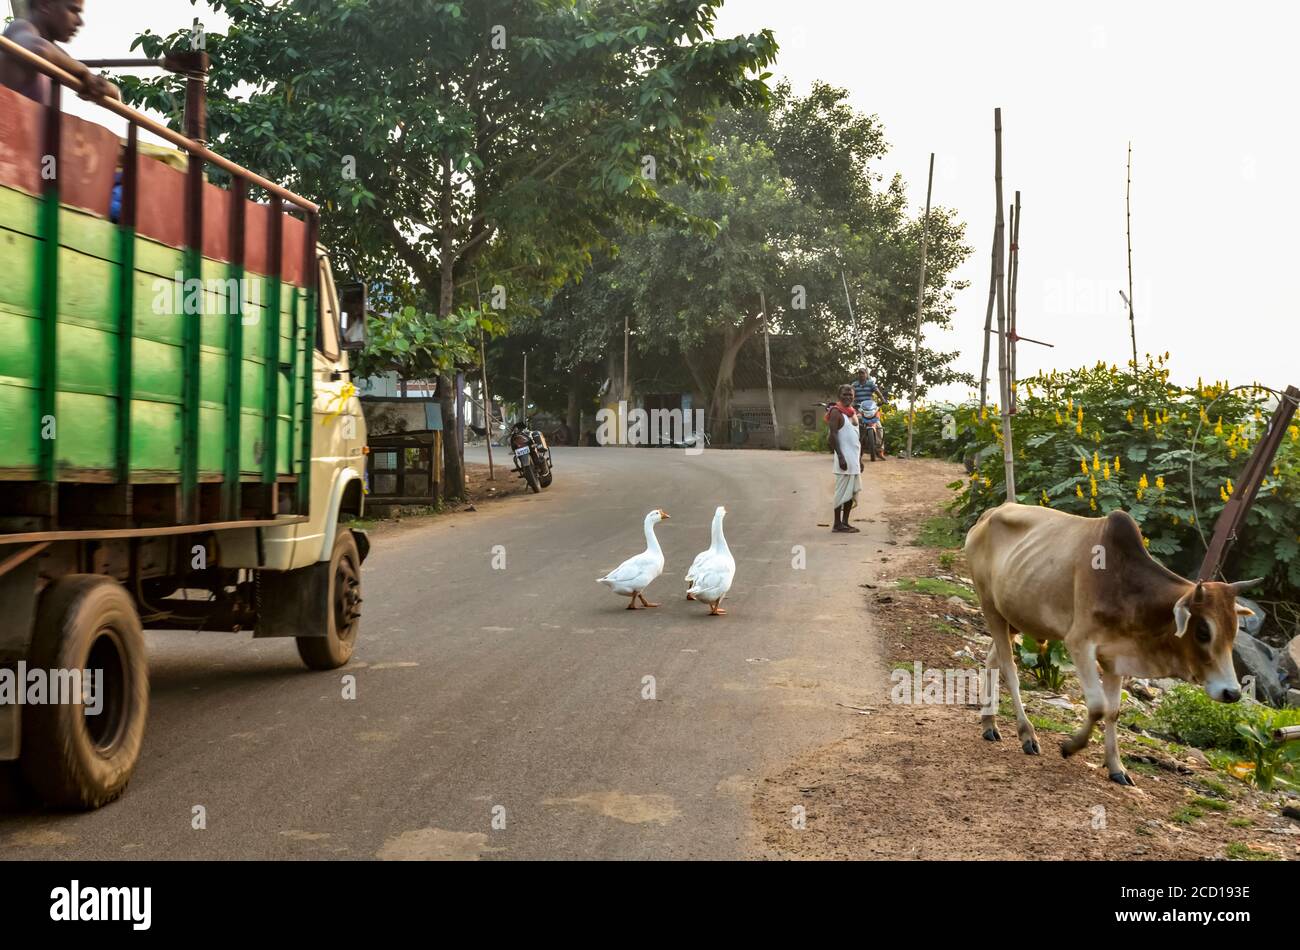 Oche bianche che passeggiano nel mezzo della strada con una mucca e moto parcheggiate; Chandipur, distretto di Baleswar, Stato di Odisha, India Foto Stock